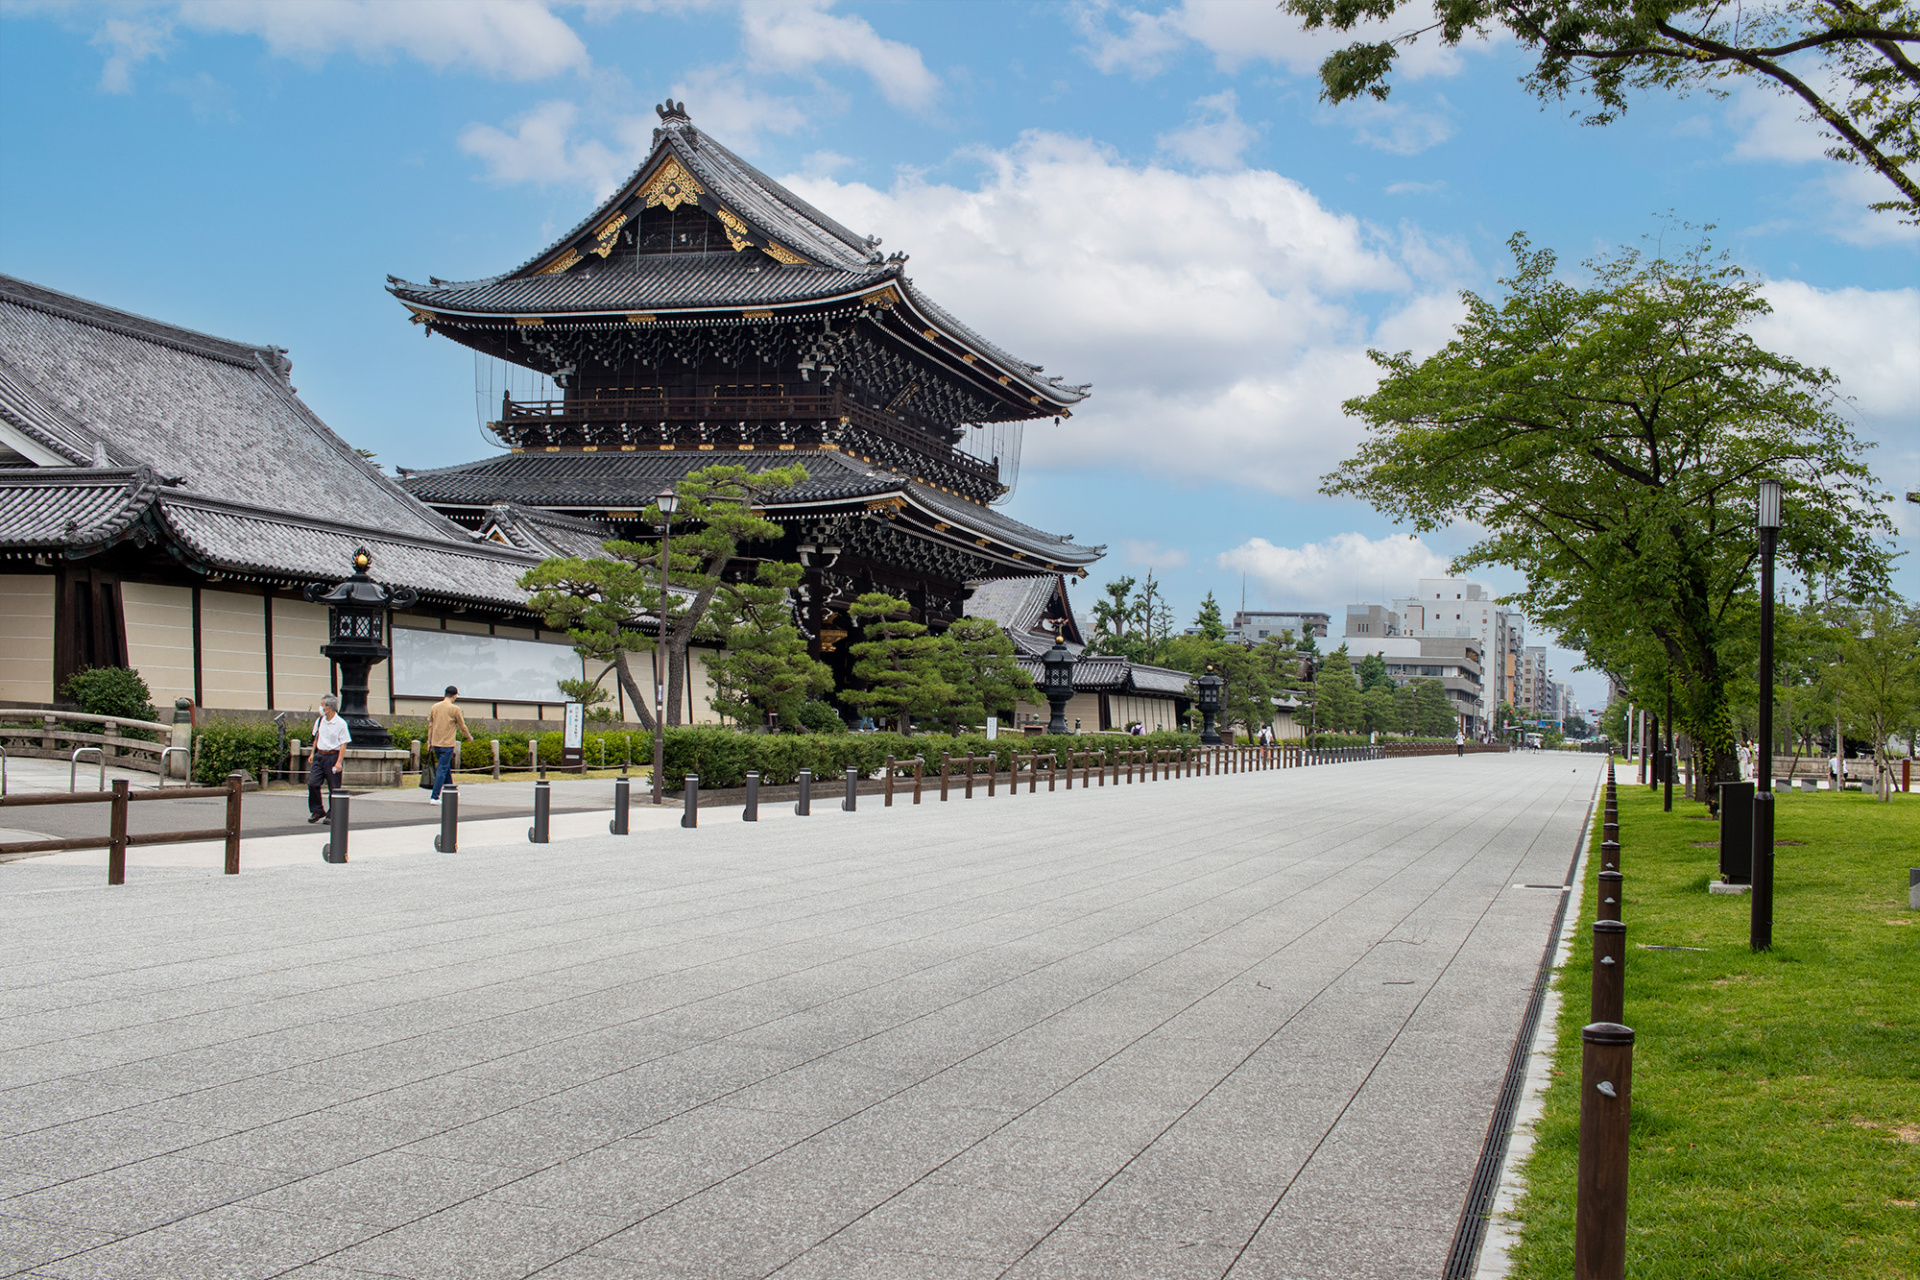 慶讃法要に先立つ3月24日（金）16時。 東本願寺の御影堂門前に京都市初の「市民緑地」がオープンしました。 京都駅から徒歩5分。緑が美しく、開放的な空間に生まれ変わった市民緑地は、地域に開かれた門前として、地元の方のみならず、京都を訪れる旅行者にとっても思い思いにくつろげる憩いの場になることでしょう。 慶讃法要の期間中、平日はキッチンカーが出店。土日はさまざまなご縁が集うマルシェを開催予定。お子様も楽しめるよう㈱ボーネルンドの遊具も設置されます。 京都の新たなランドマークに、ぜひ遊びに来てください！